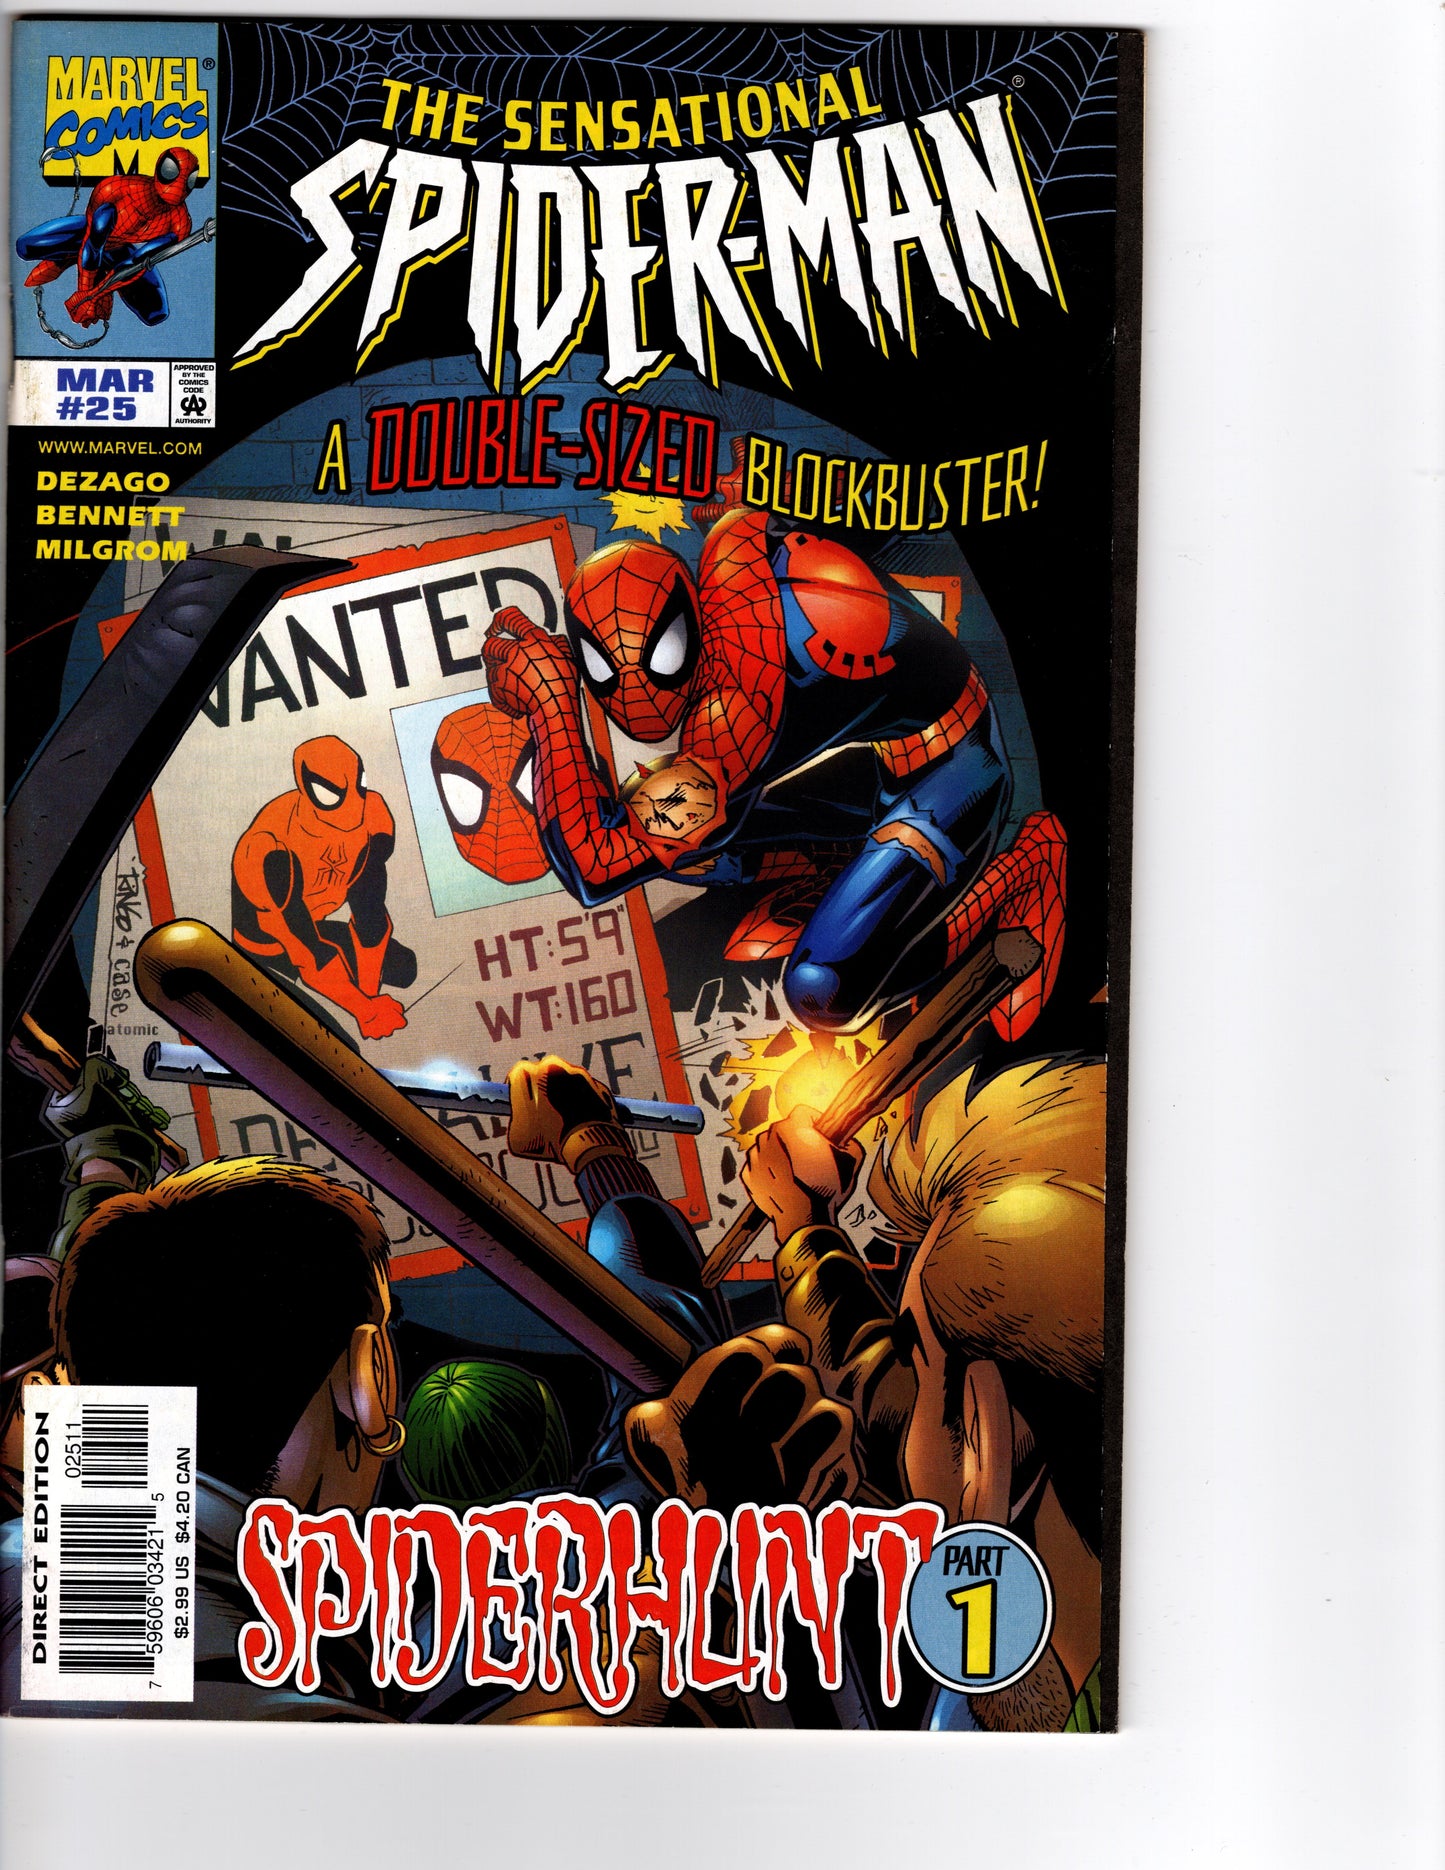 The Sensational Spider-Man No. 25